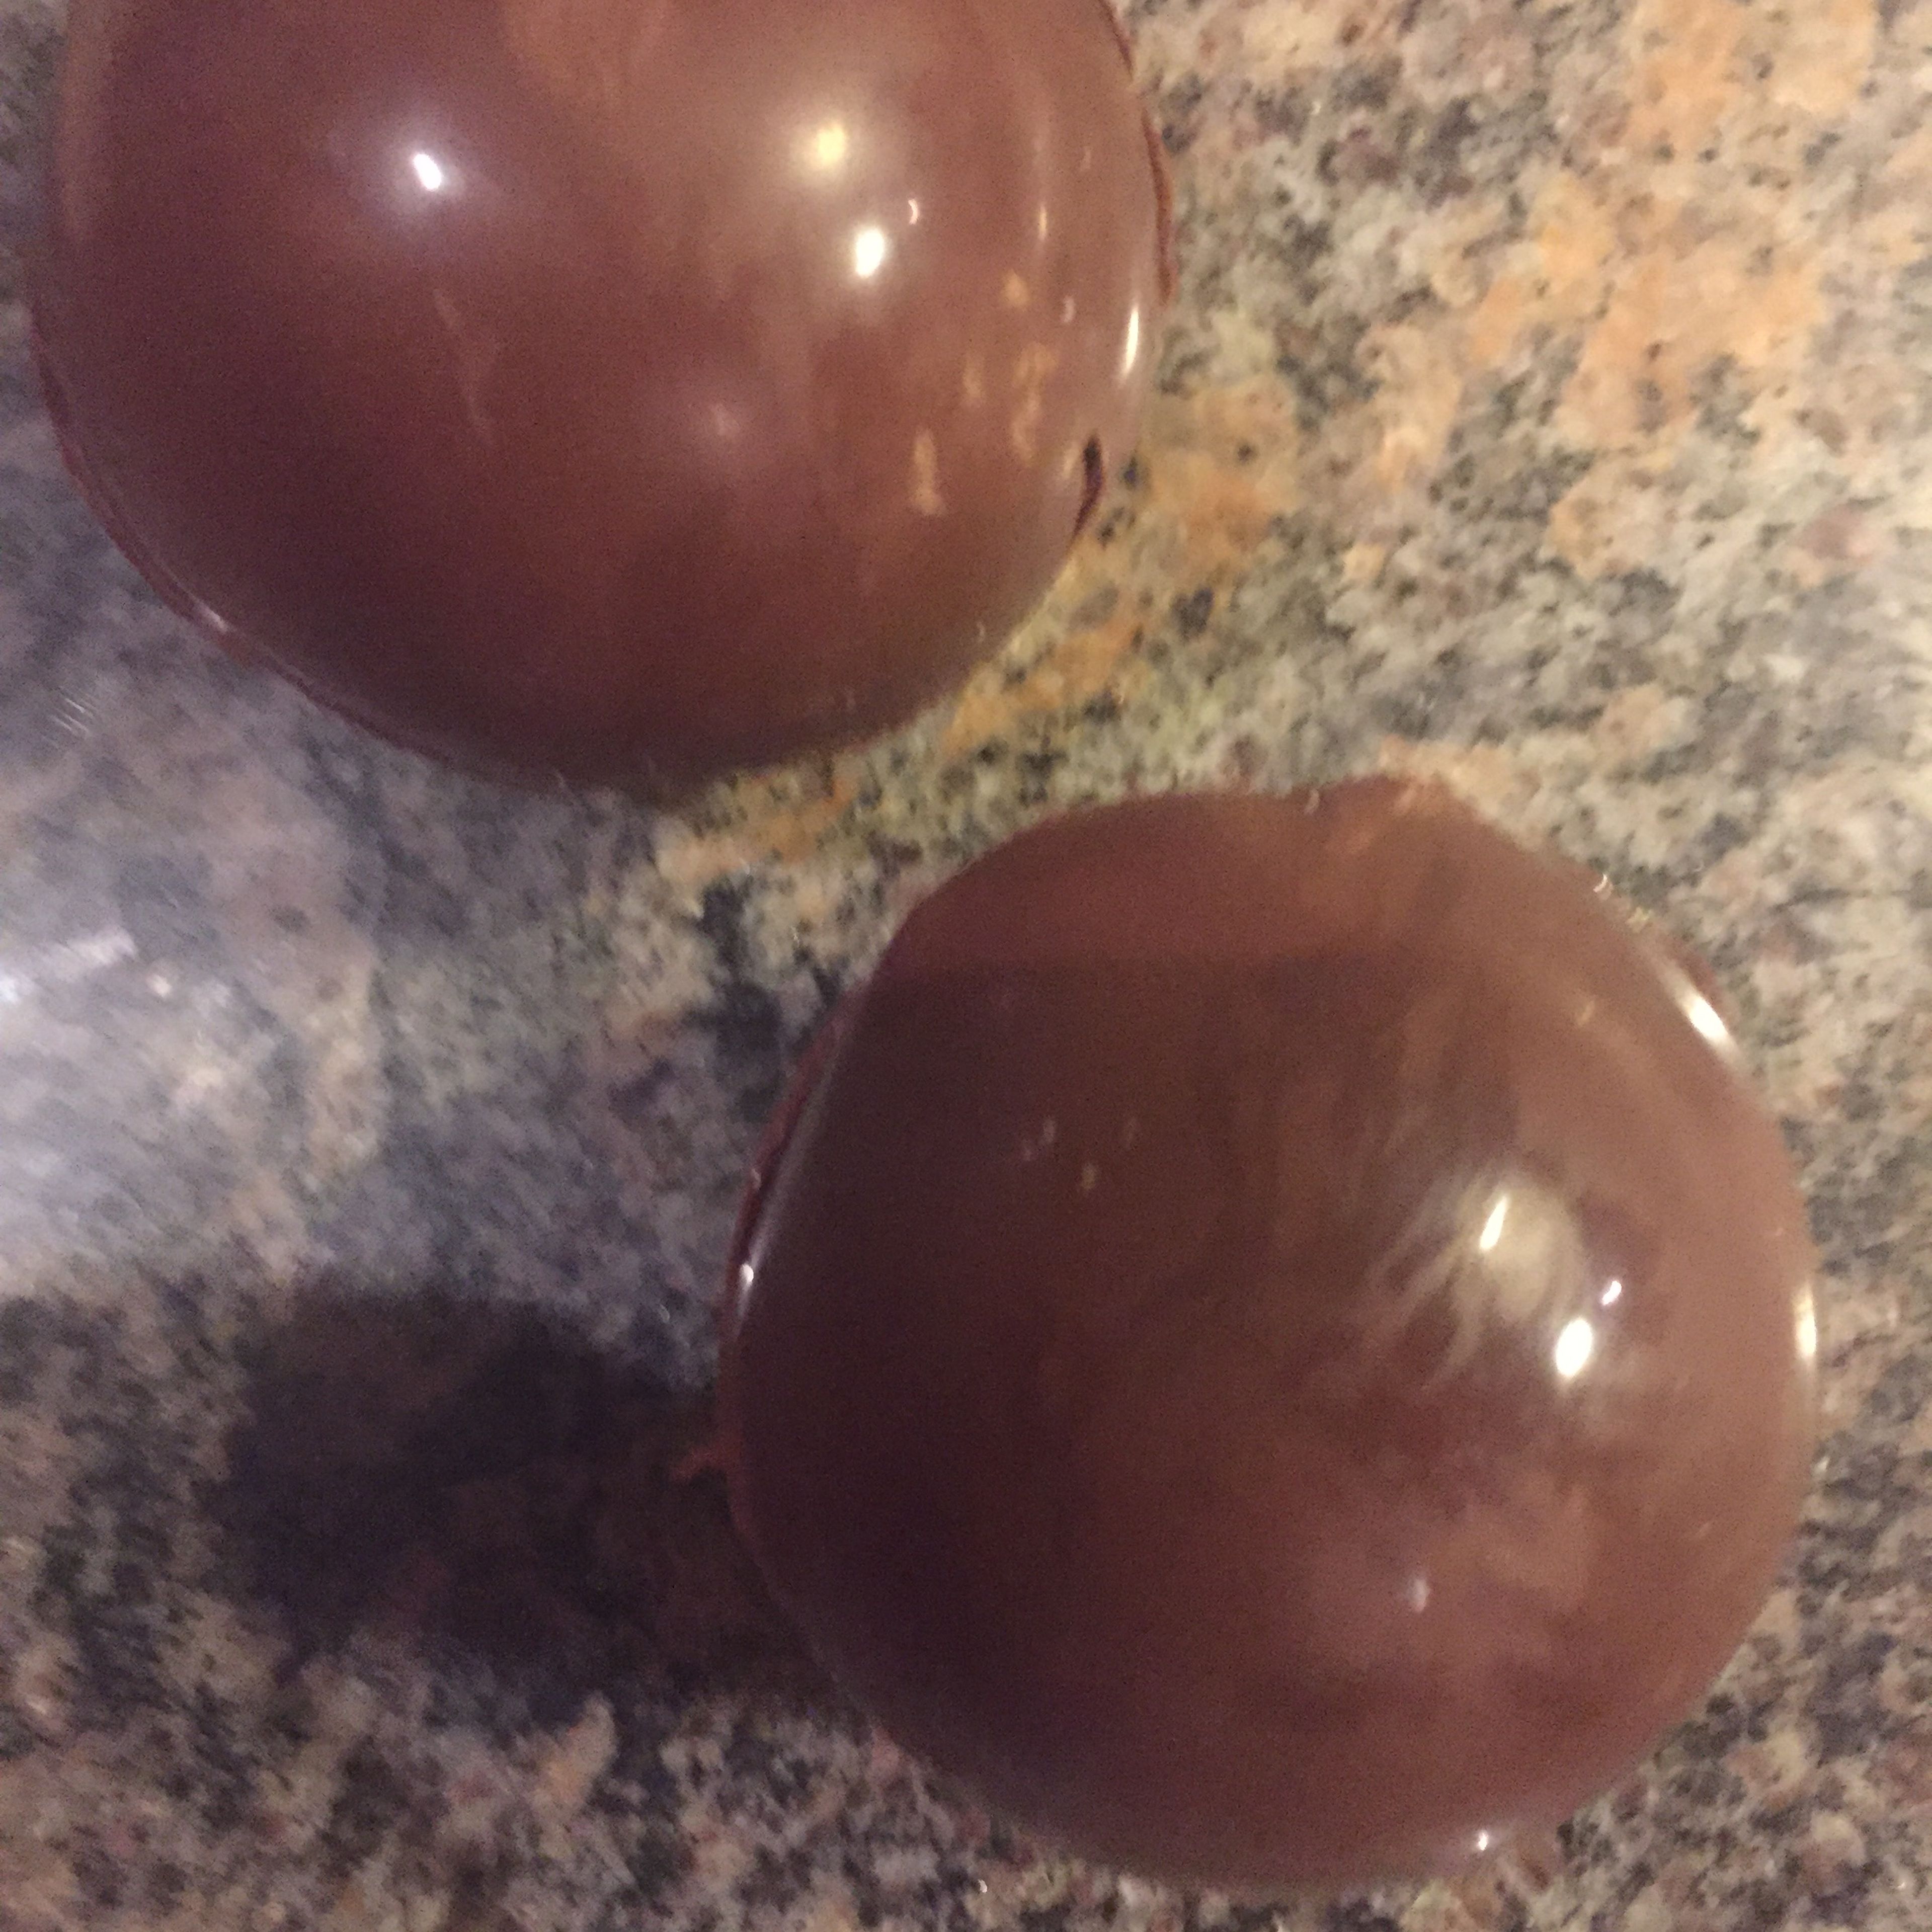 Schokolade aus Form nemen rand leicht erhitzen Marsmellows hinein geben und zwei schoko formen zusammen kleben.